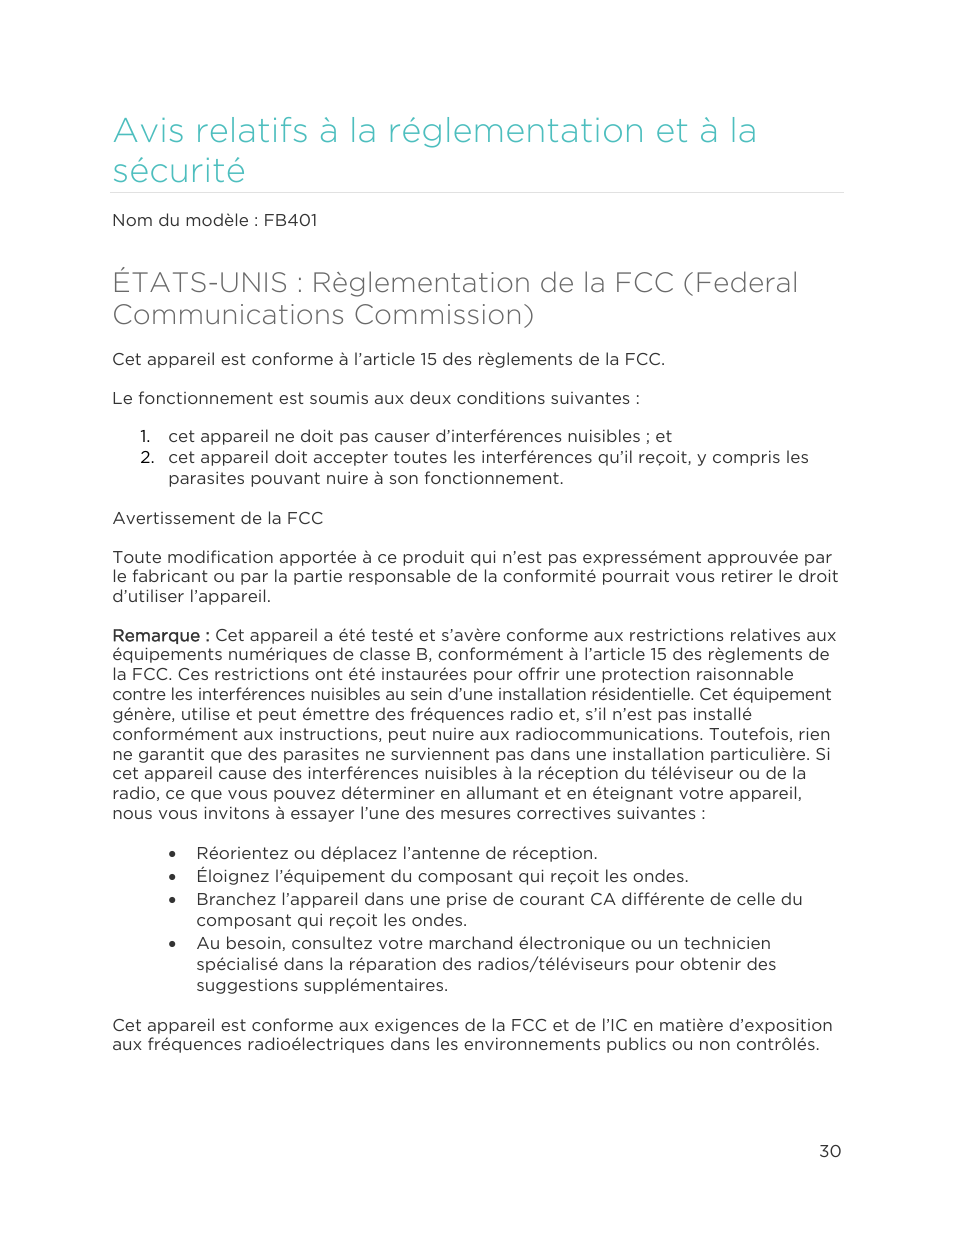 Avis relatifs à la réglementation et à la sécurité | Fitbit Flex Manuel d'utilisation | Page 35 / 40